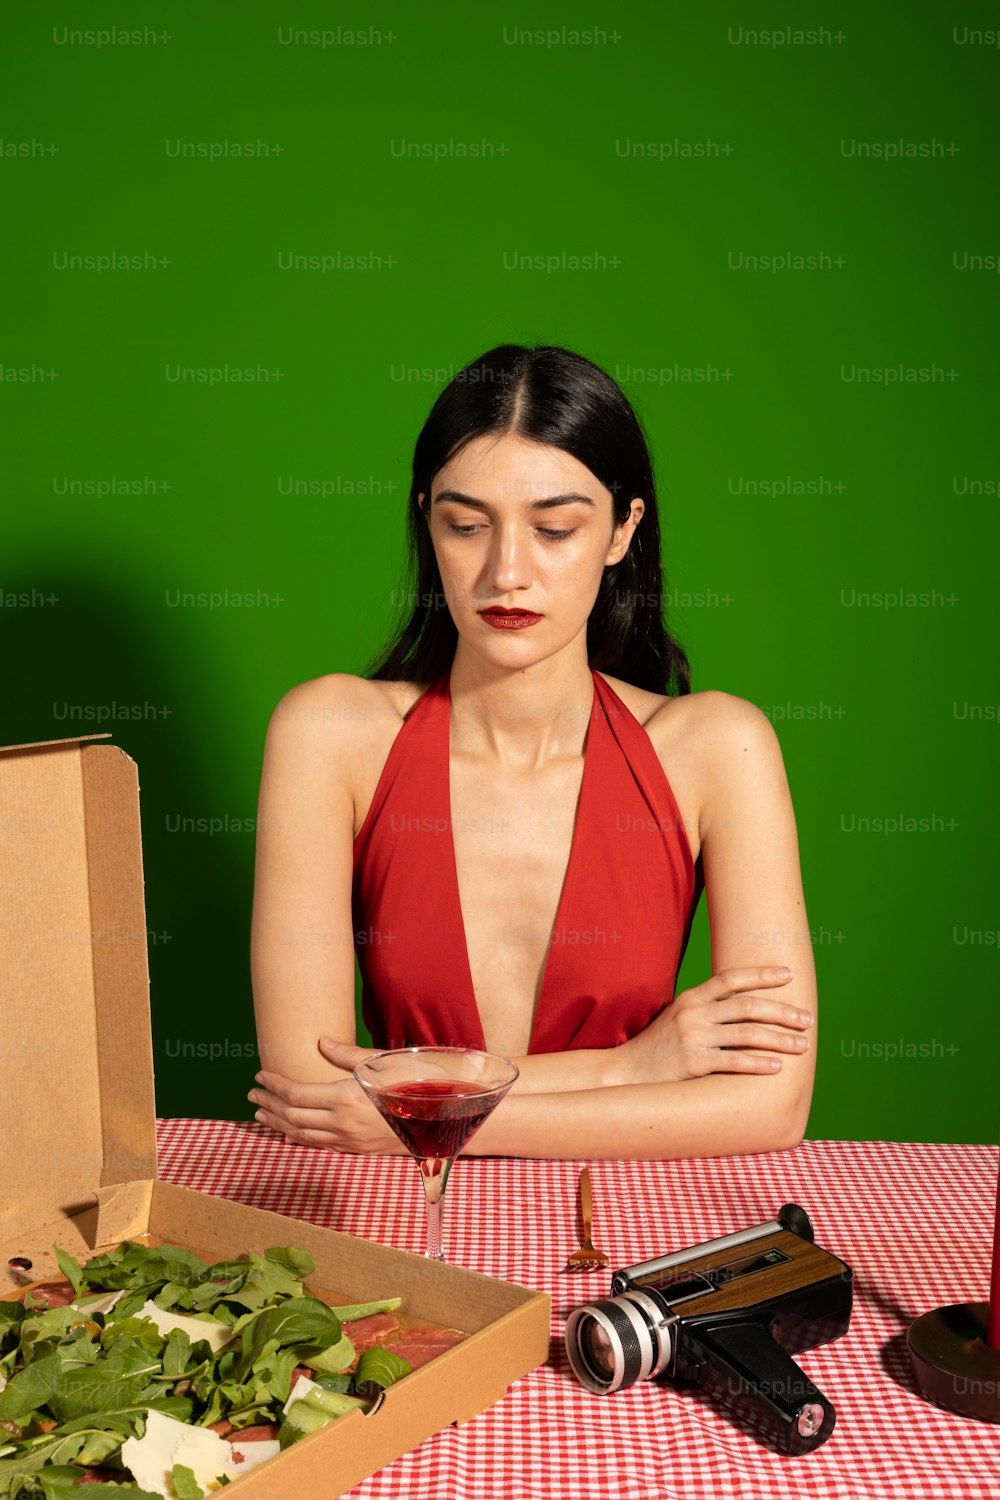 피자 상자가 있는 테이블에 앉아 있는 여자